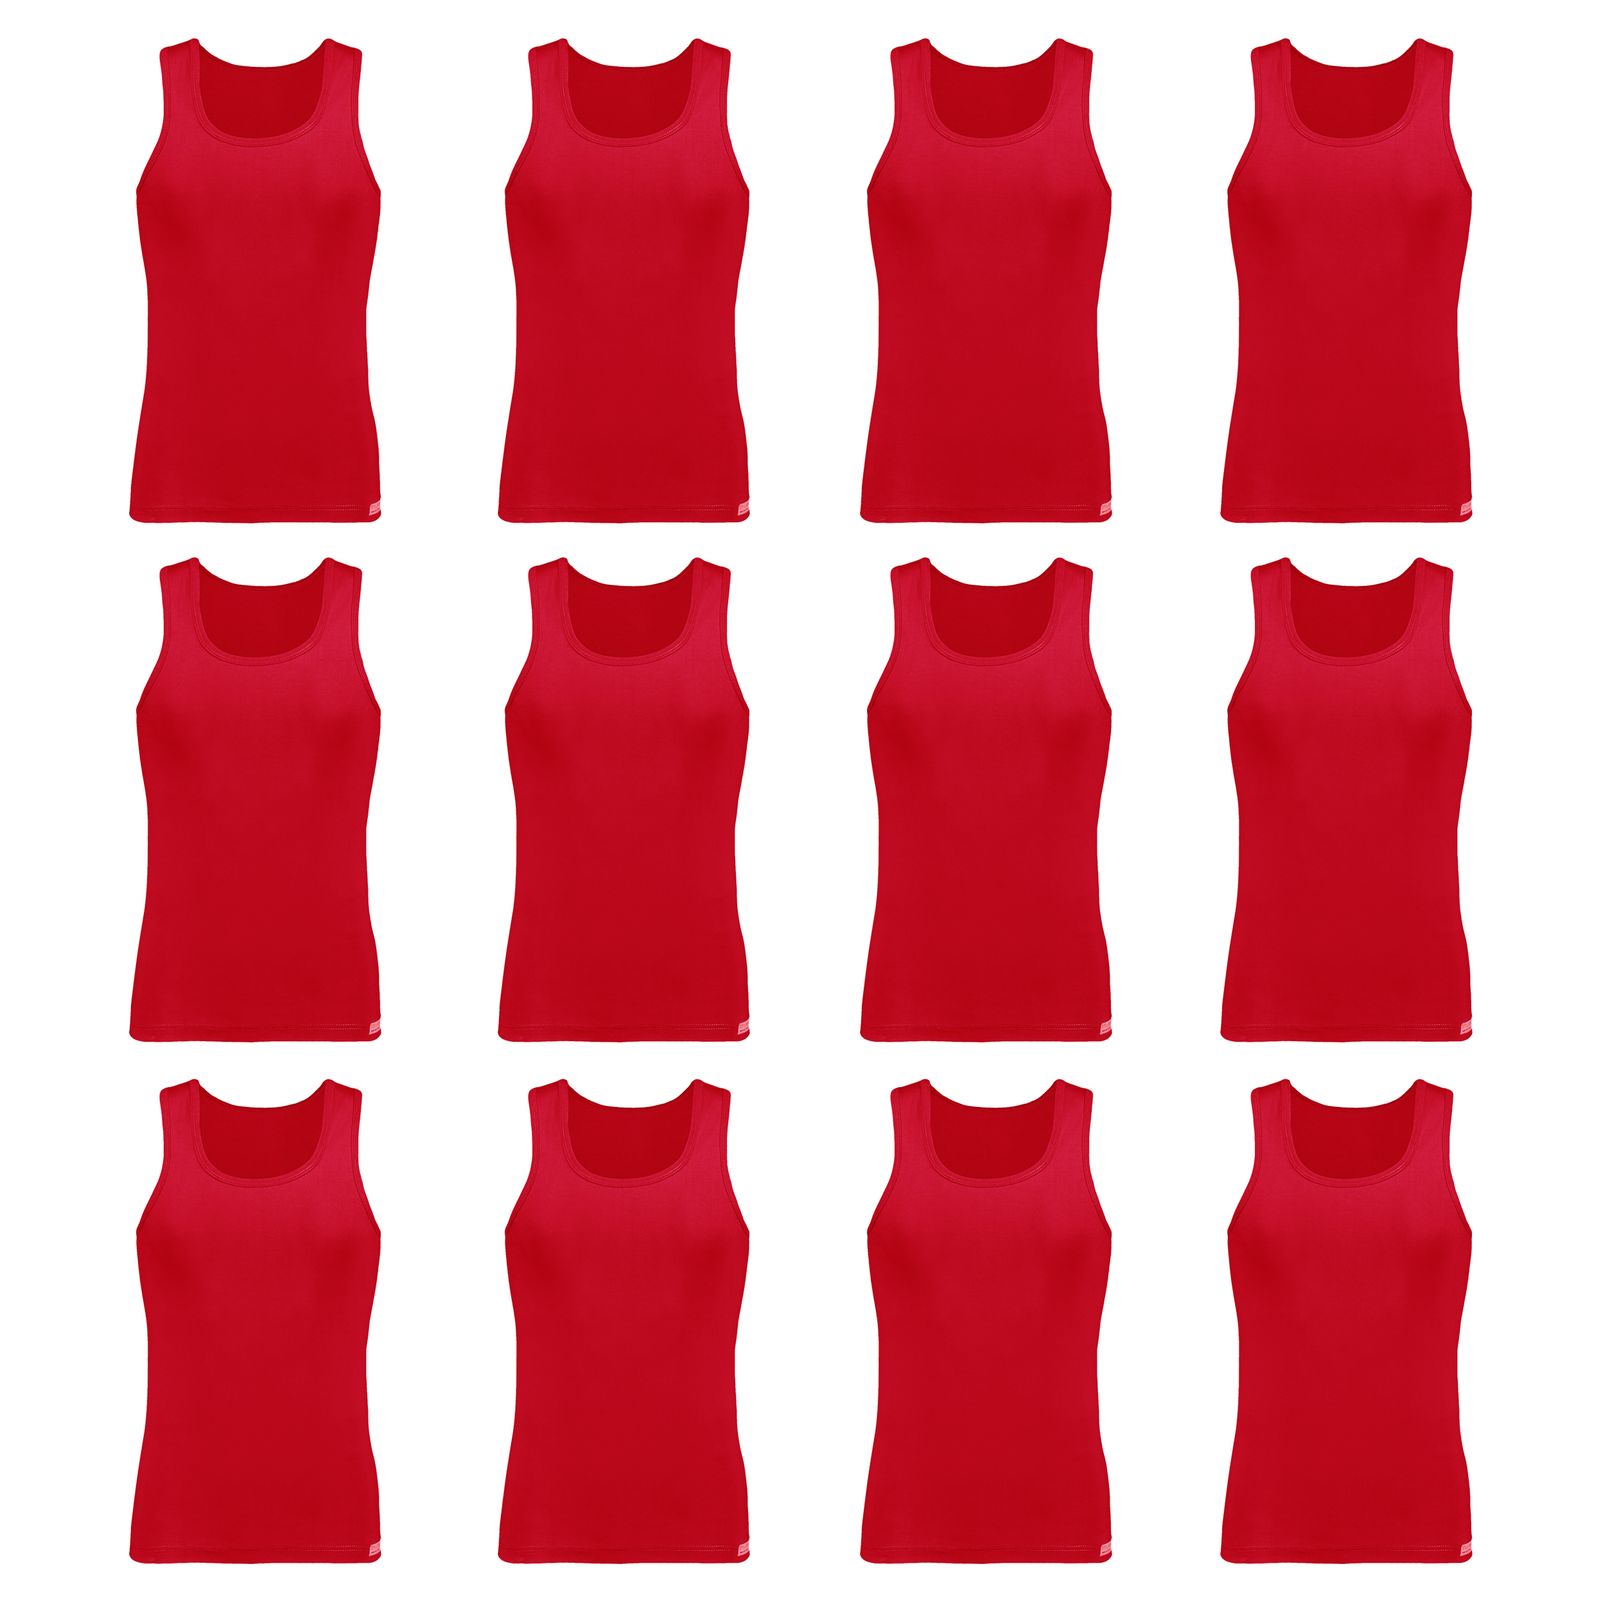 زیرپوش رکابی مردانه برهان تن پوش مدل 2-01  رنگ قرمز بسته 12 عددی